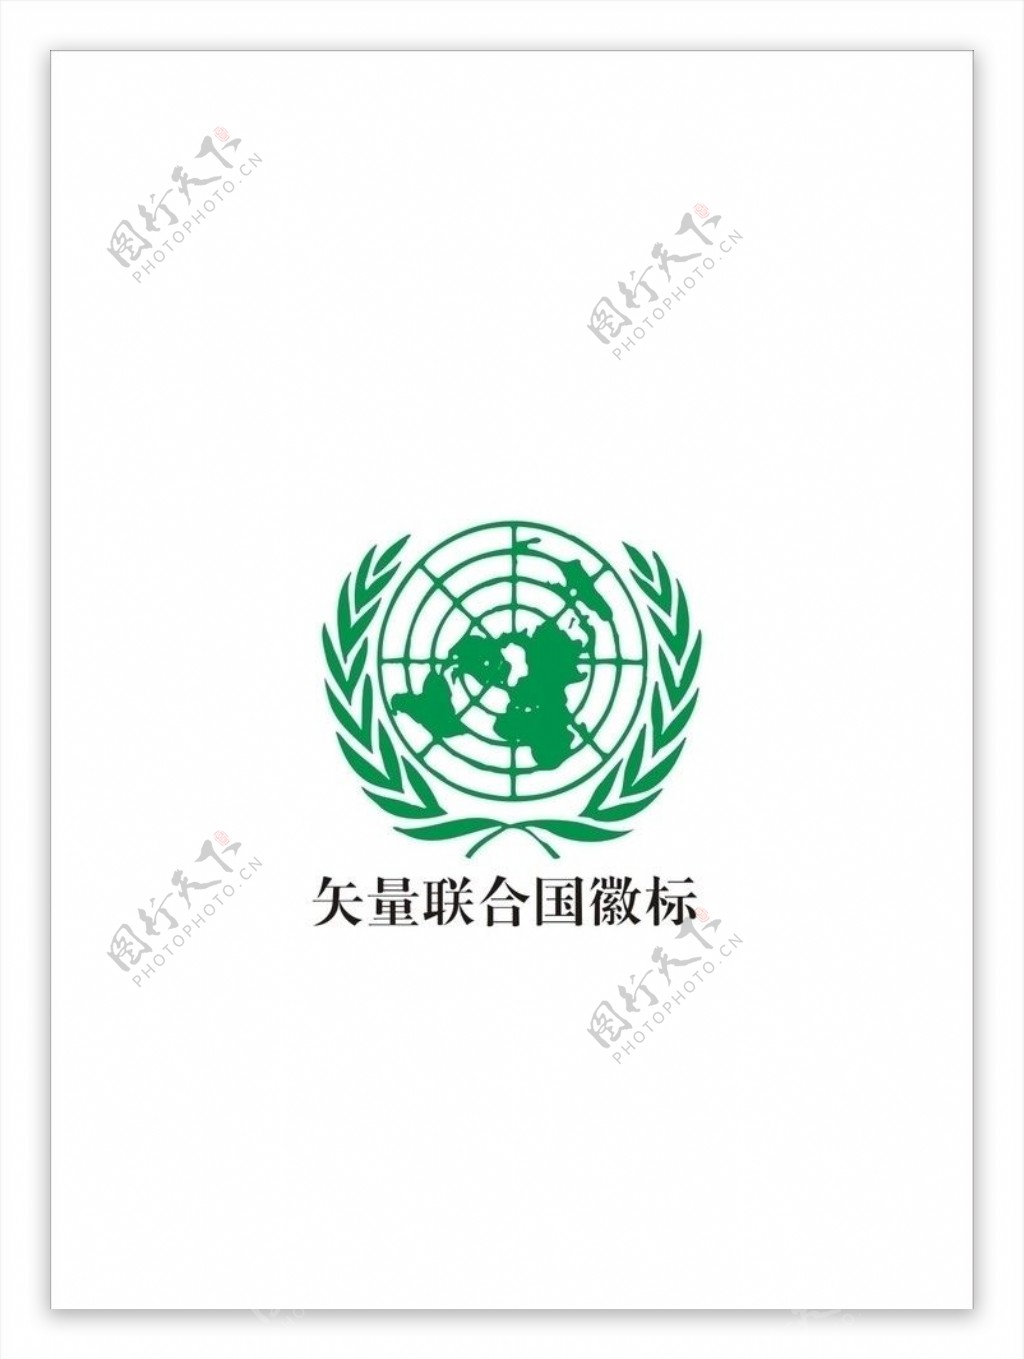 联合国徽标图片